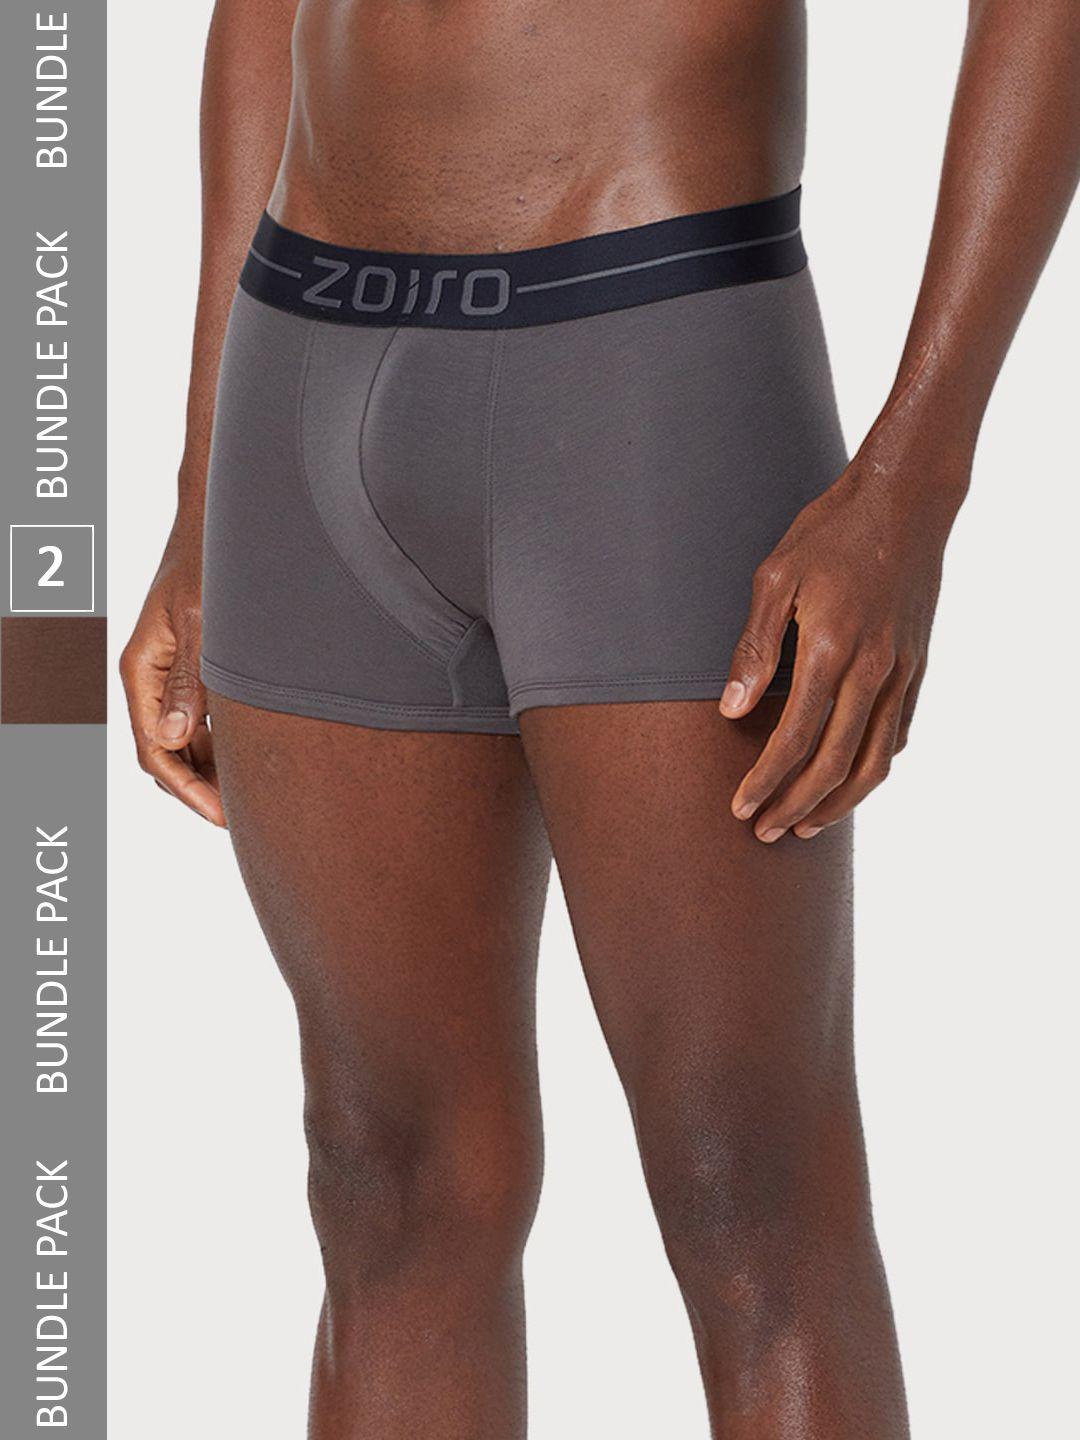 zoiro men pack of 2 outer elastic soft feel trunks